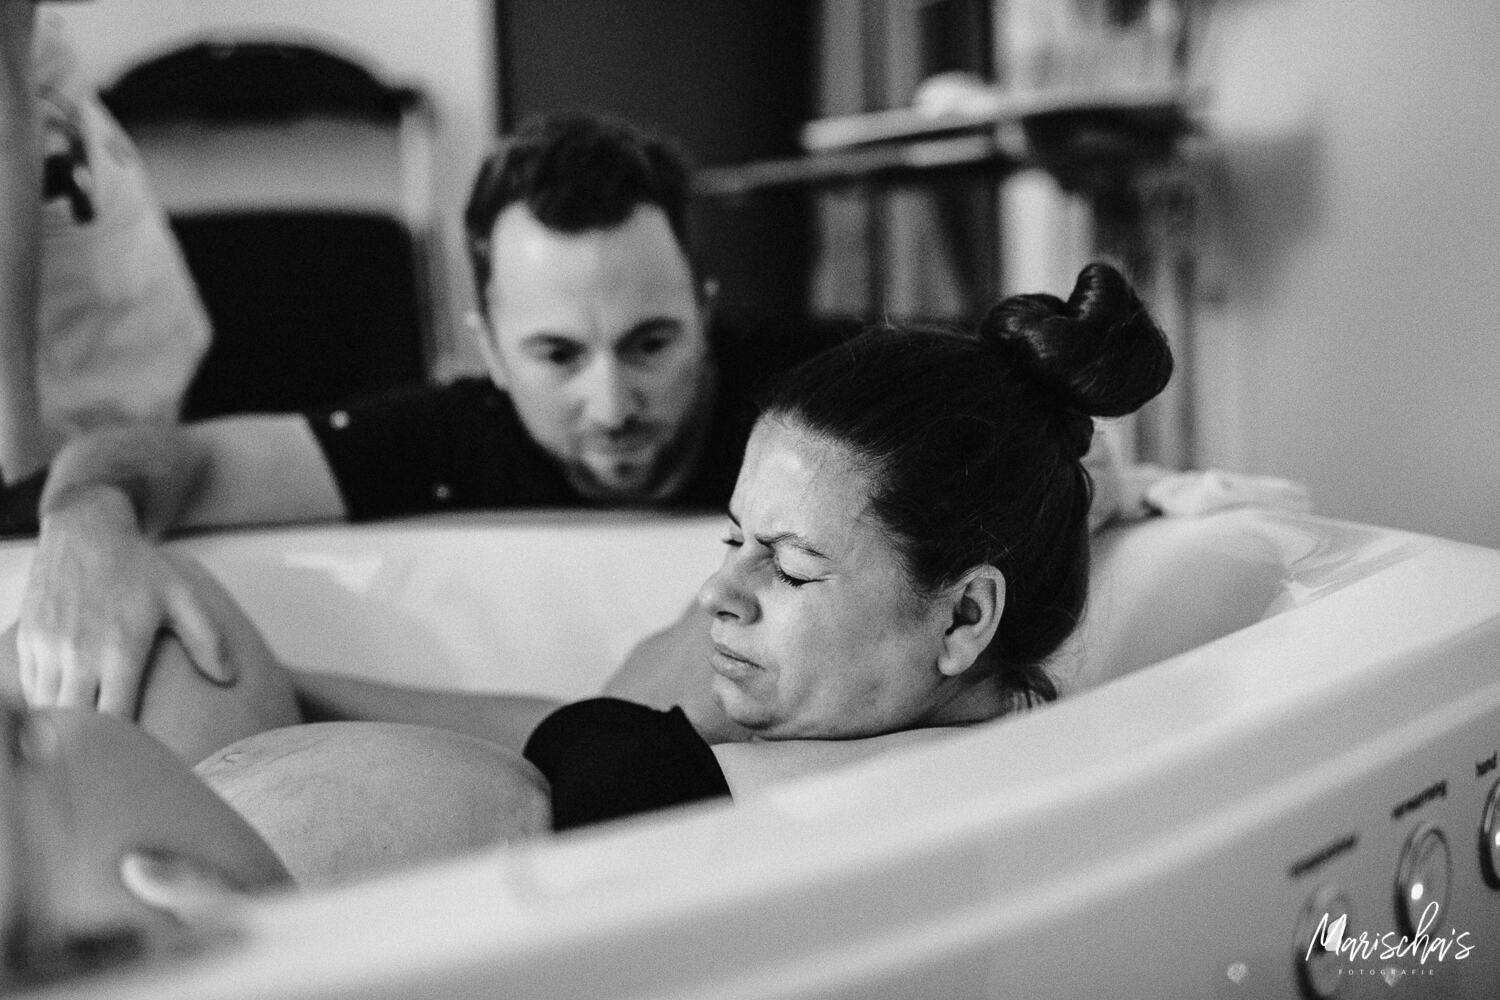 bevallingsfotograaf voor een badbevalling in het geboortecentrum zuyderland